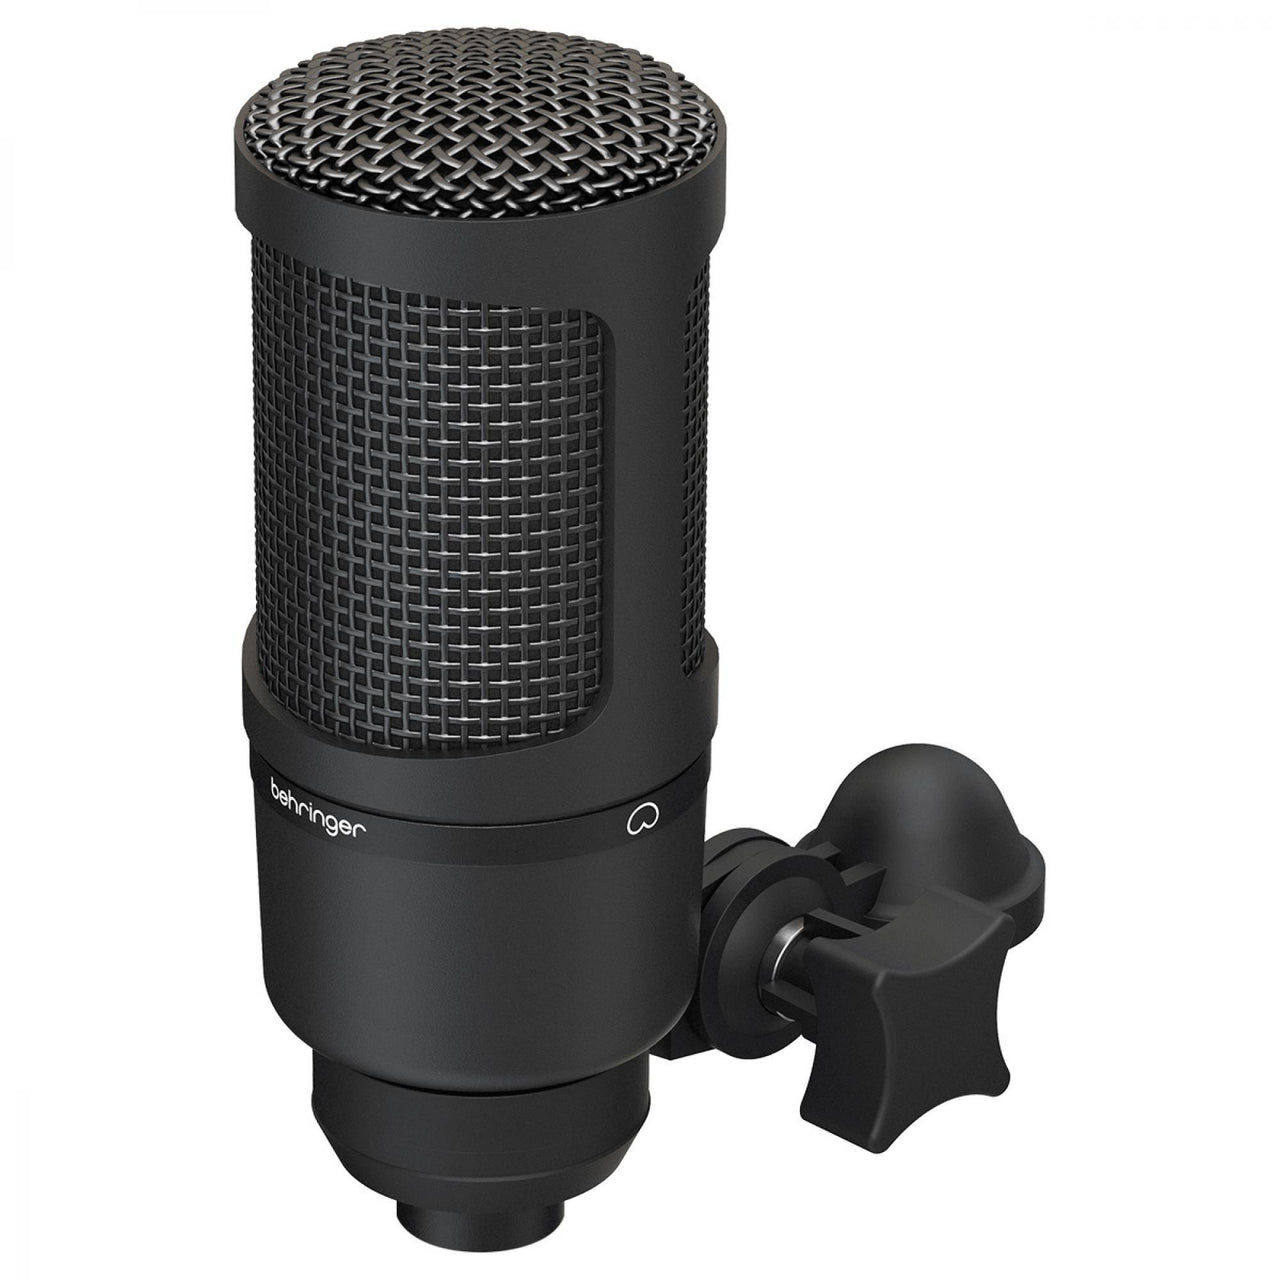 Microfono Behringer Bm1 Grabacion Profesional de Estudio